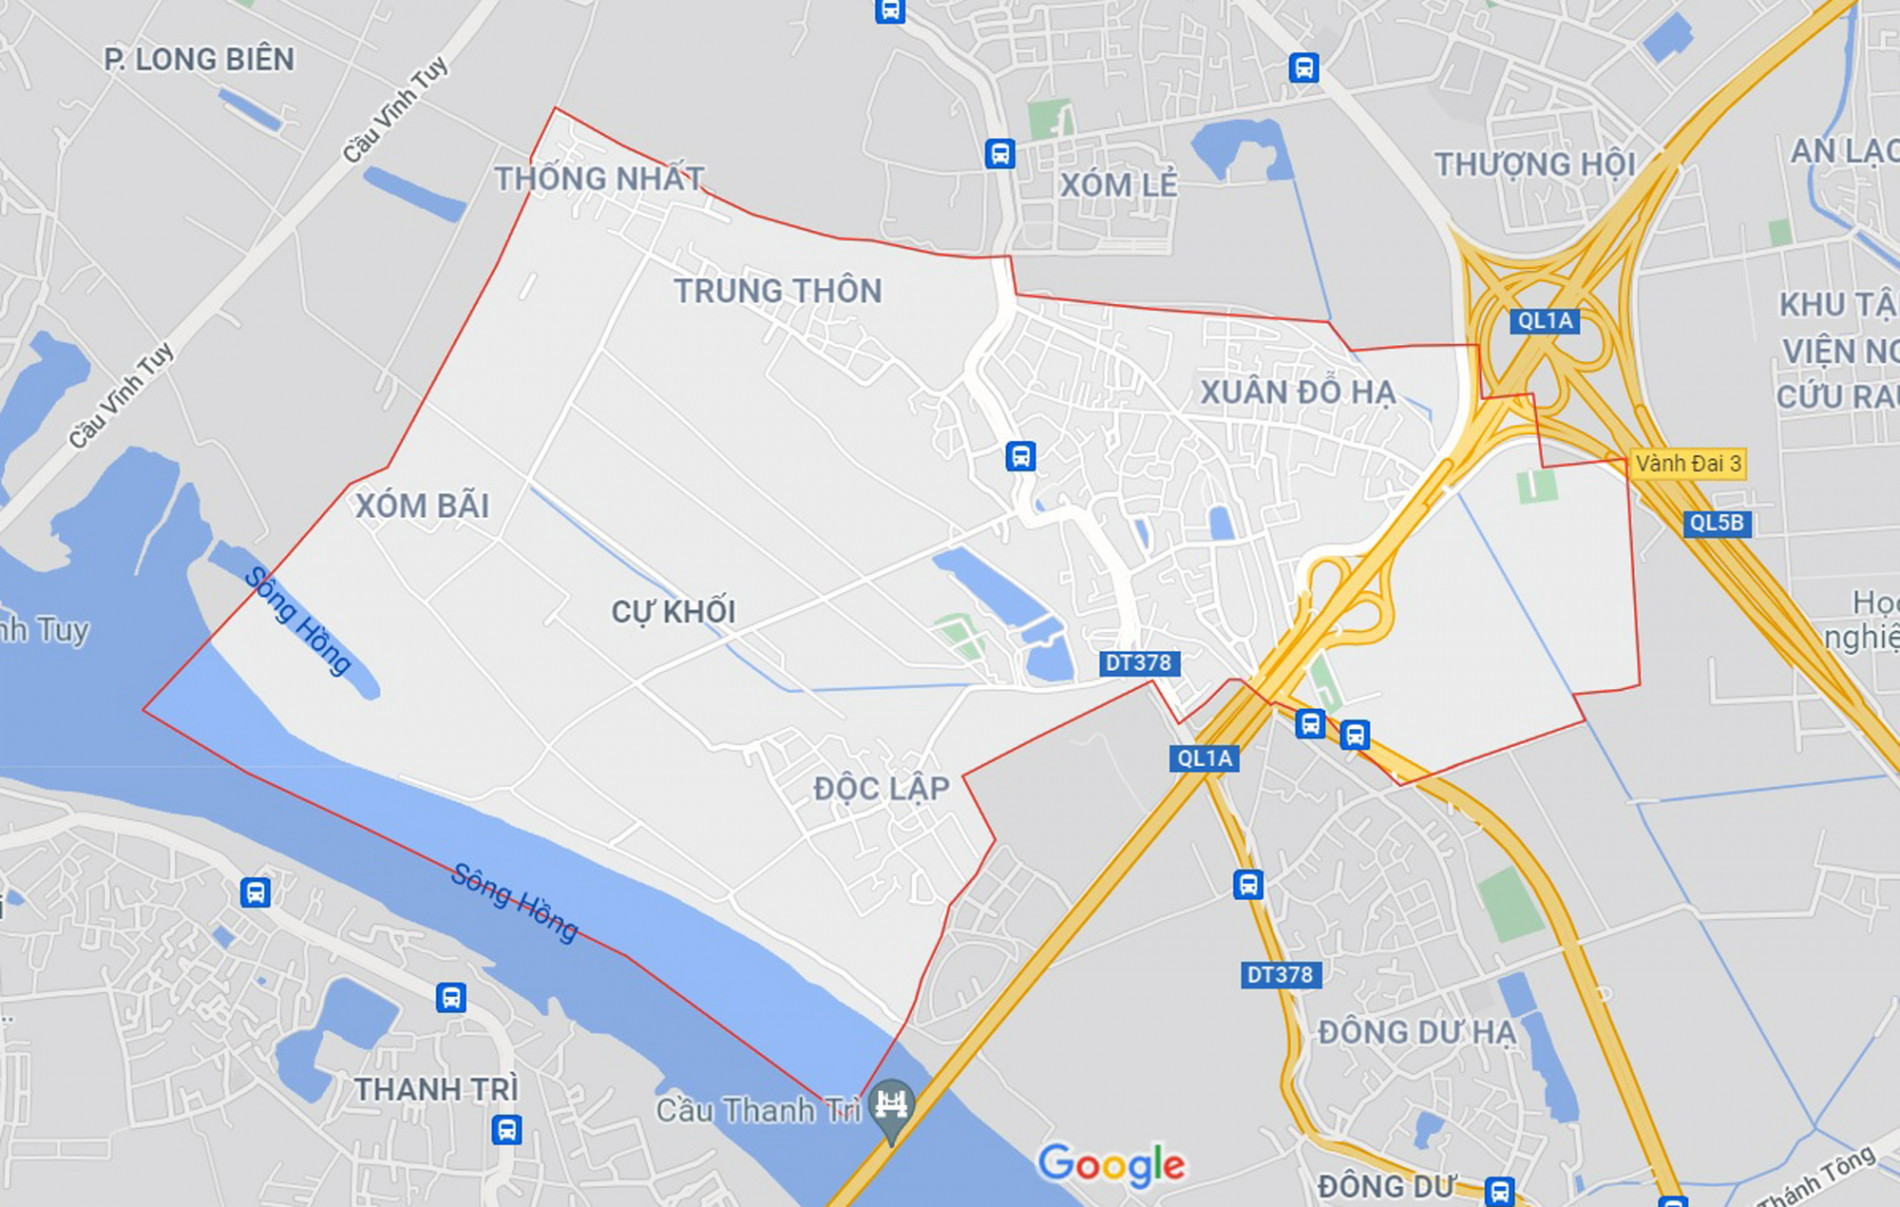 Những khu đất sắp thu hồi để mở đường ở phường Cự Khối, Long Biên, Hà Nội (phần 2) - Ảnh 1.